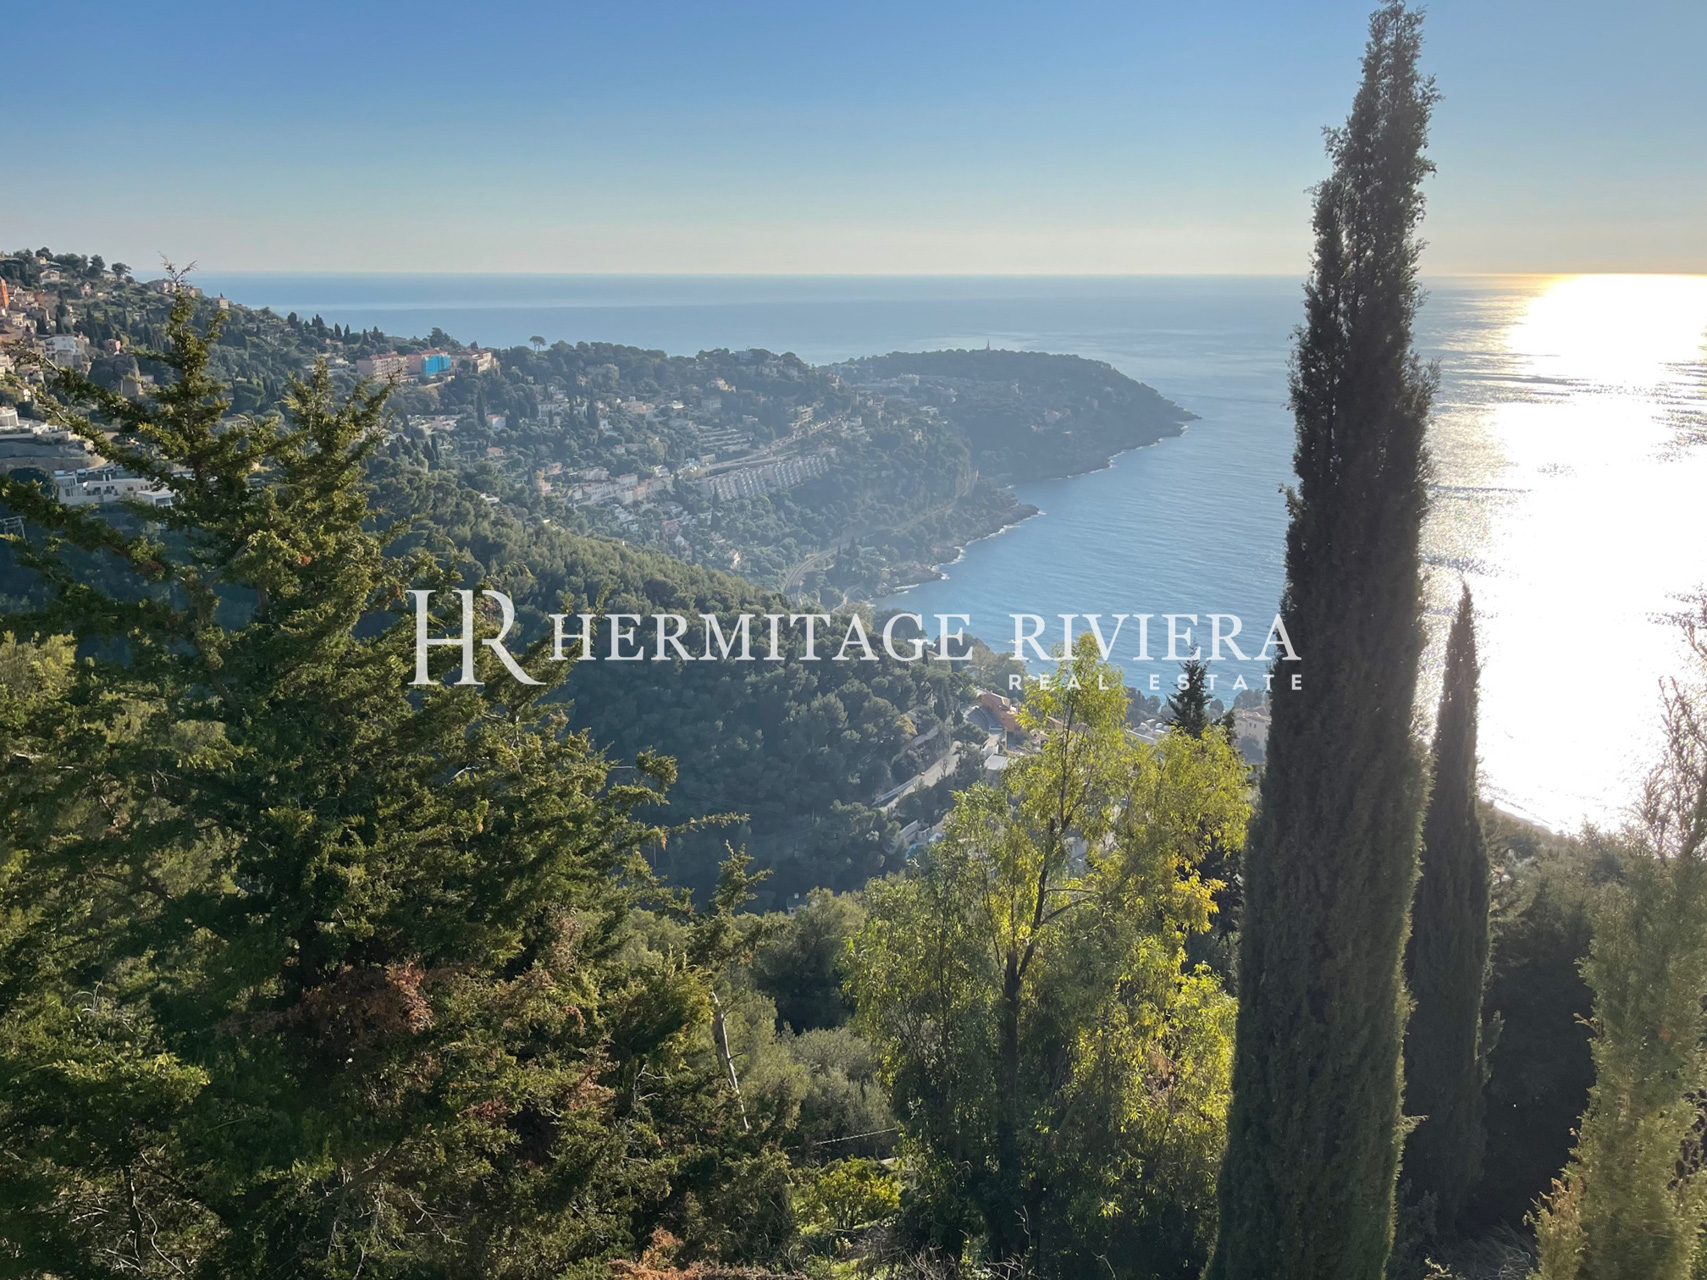 Propriete proche Monaco vue mer panoramique (image 2)